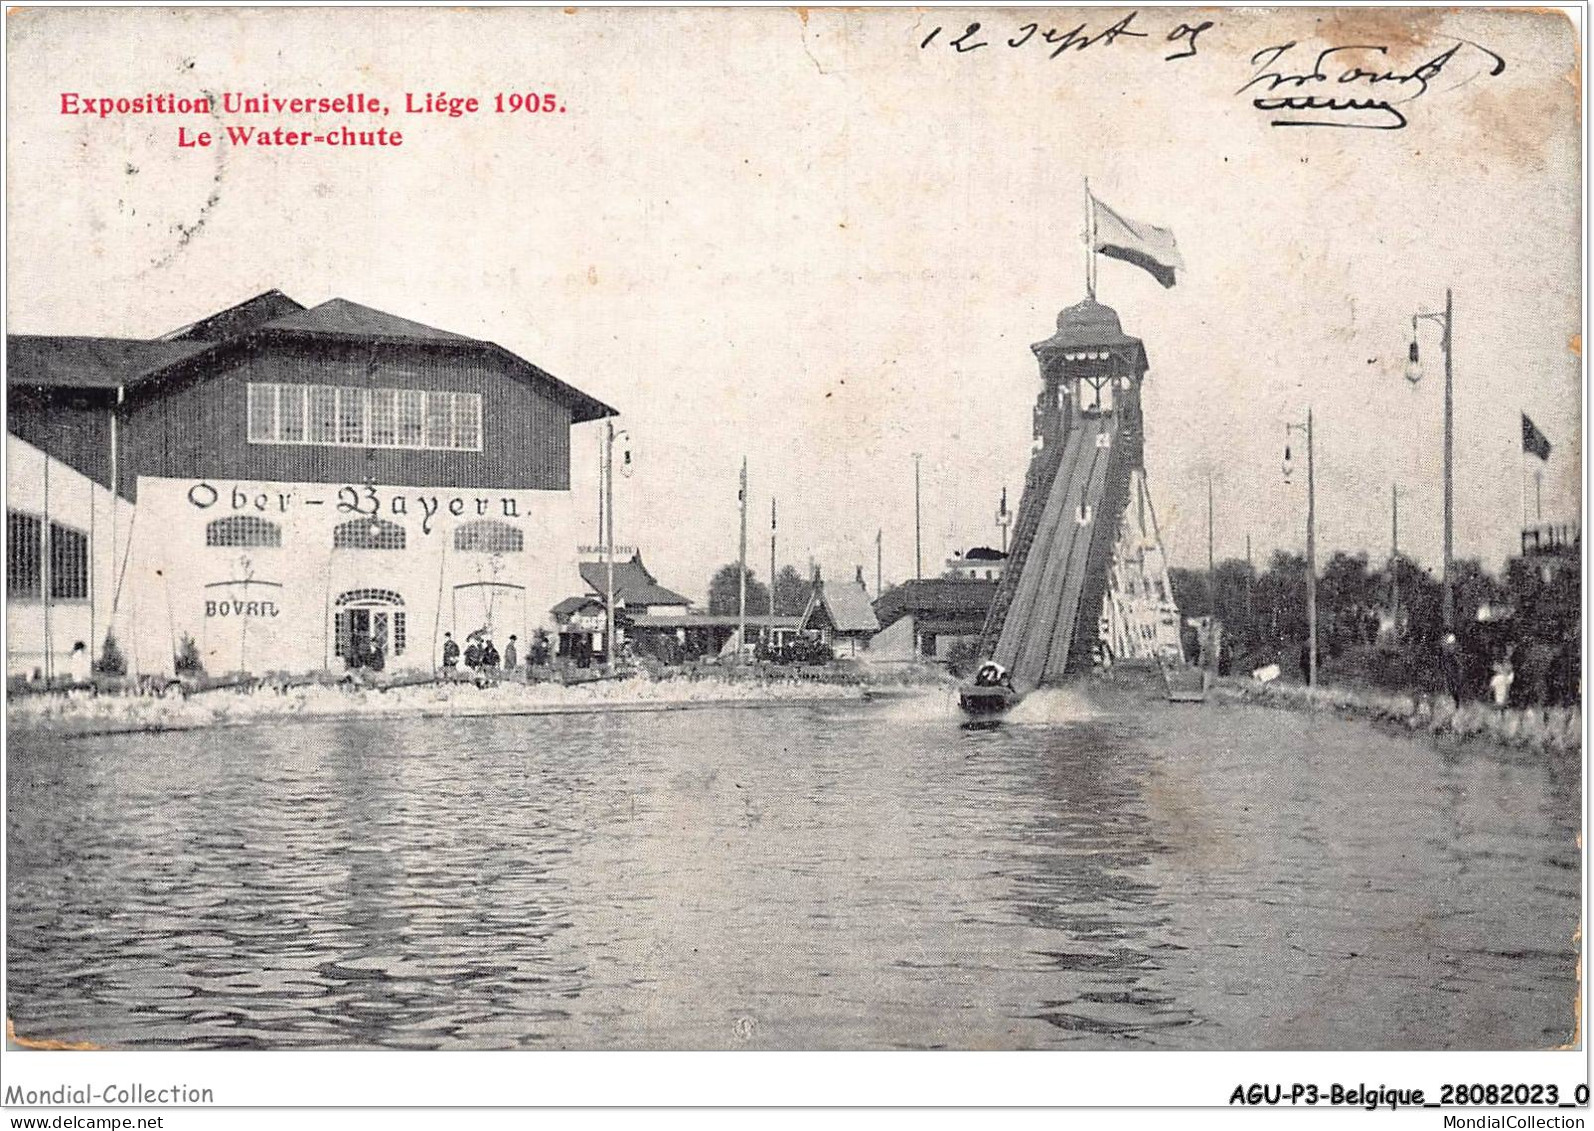 AGUP3-0144-BELGIQUE - Exposition Universelle - LIEGE 1905 - Le Water-chute - Liège